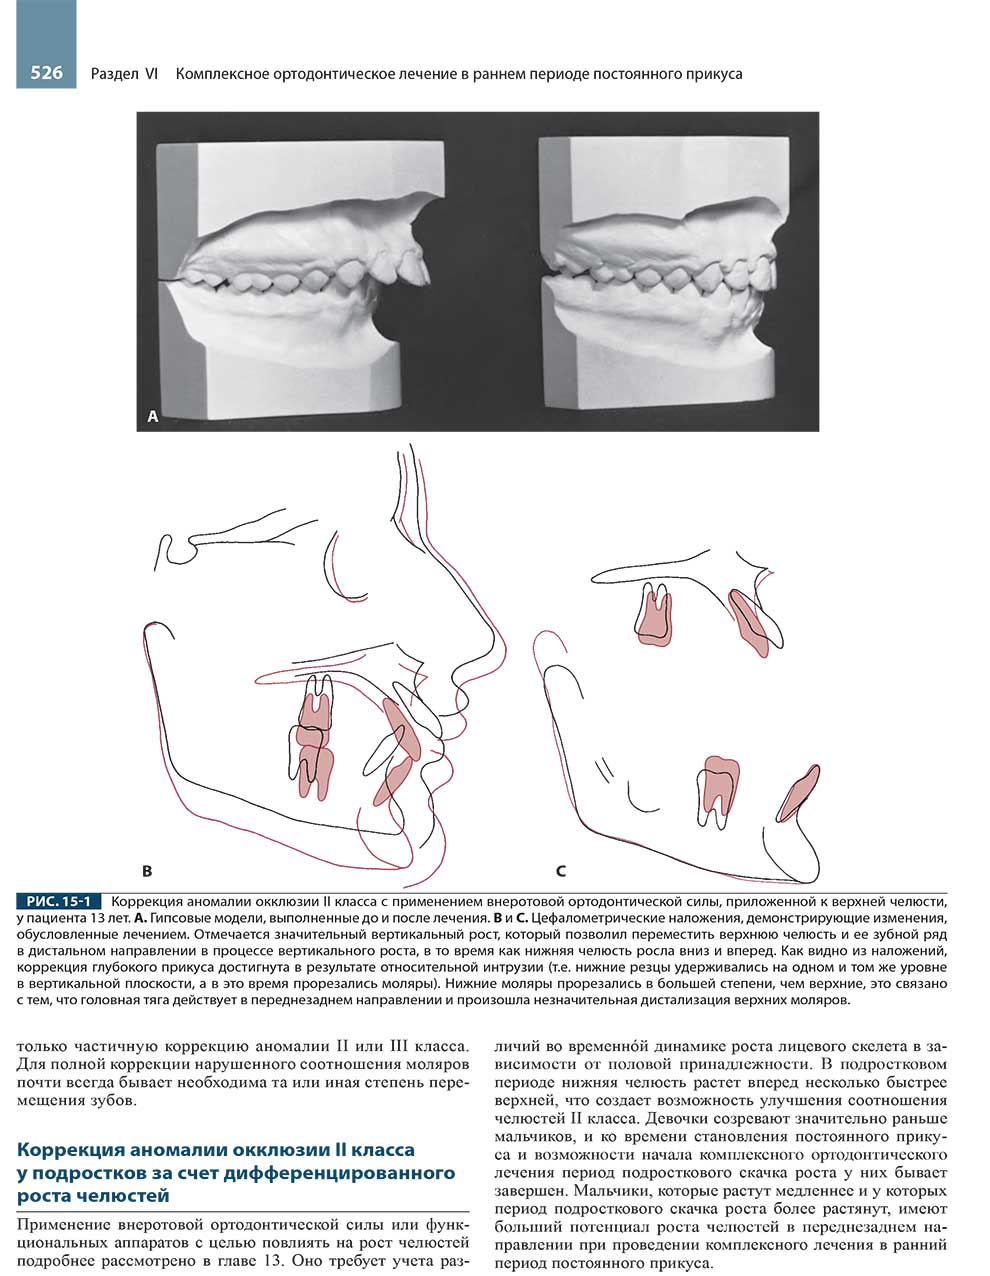 Коррекция аномалии окклюзии II класса с применением внеротовой ортодонтической силы.